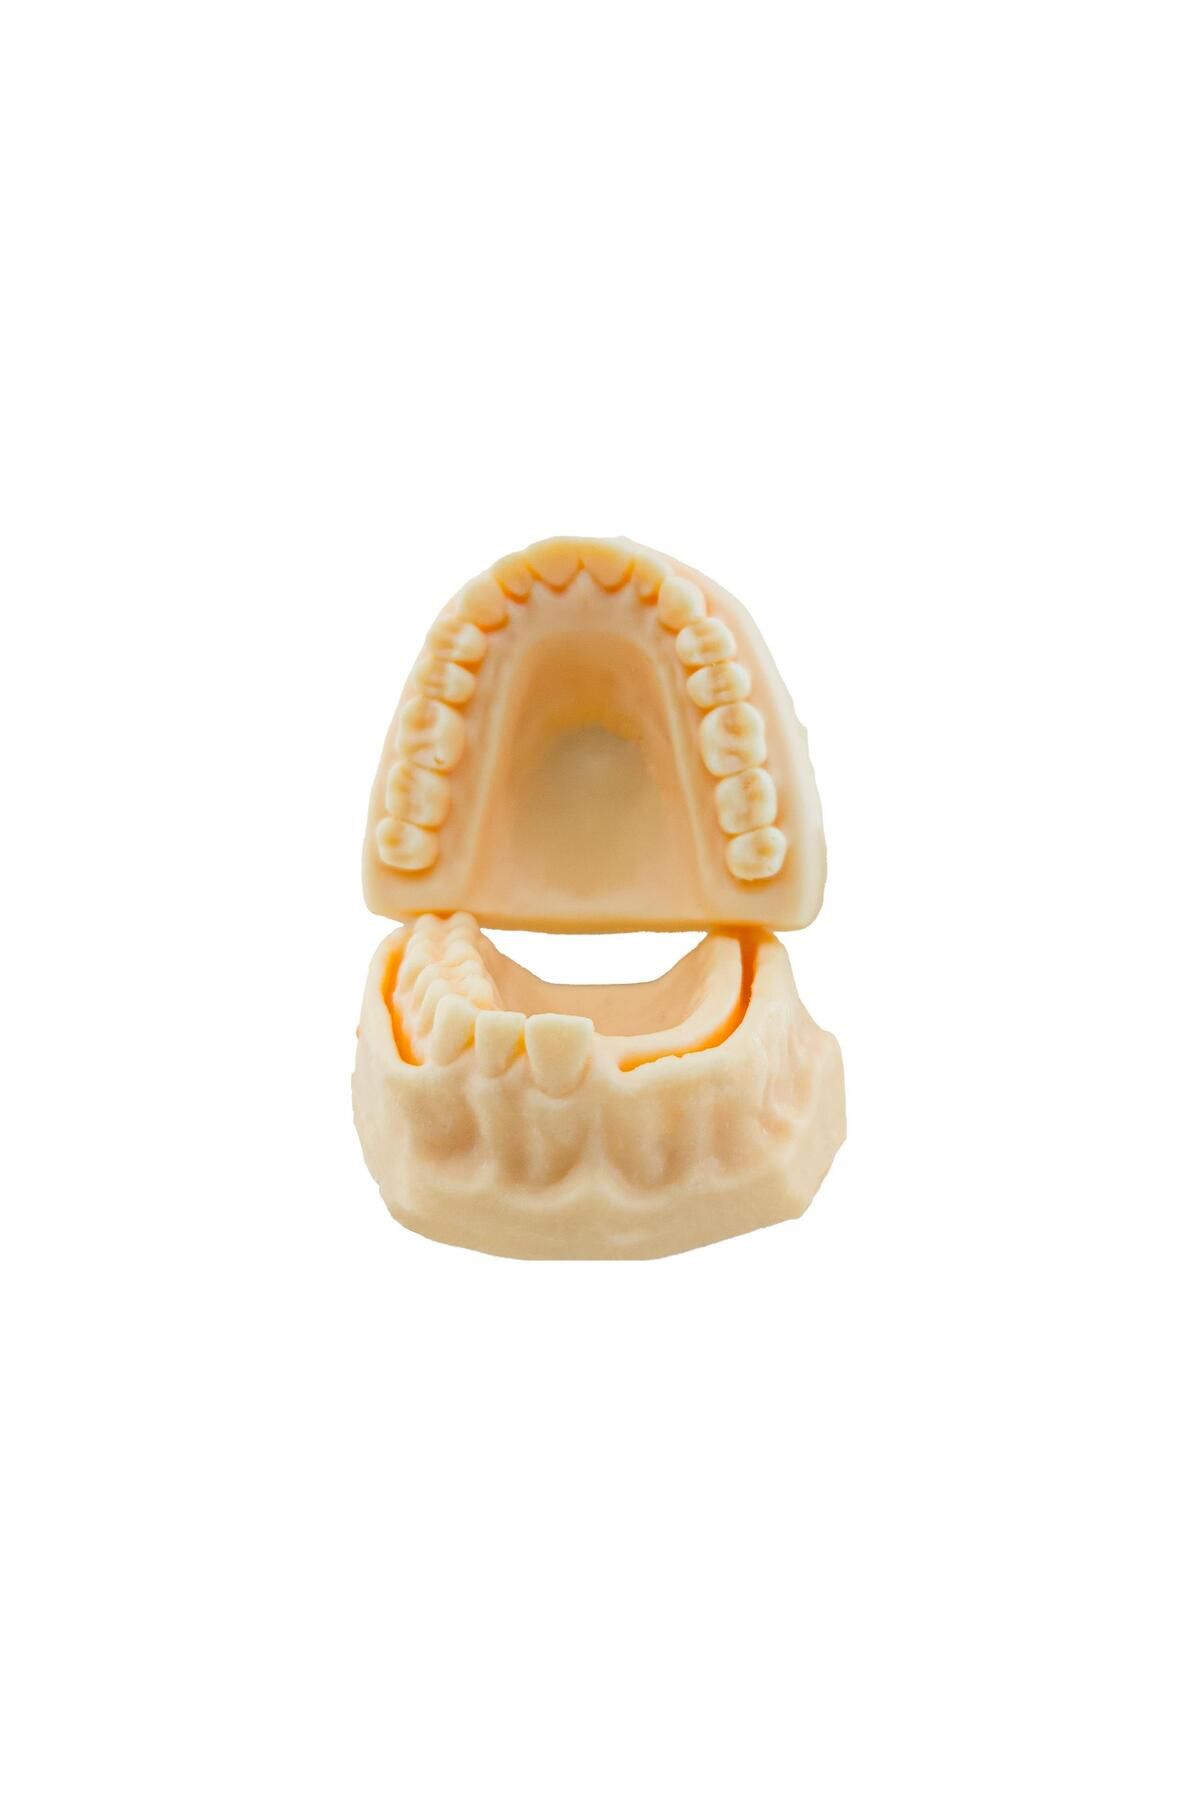 barishan medikal Silikon Ağız Diş Dikiş Ortodontik Alt Çene Sütür Gömülü Diş Çalışma Maketi Eğitim Modeli